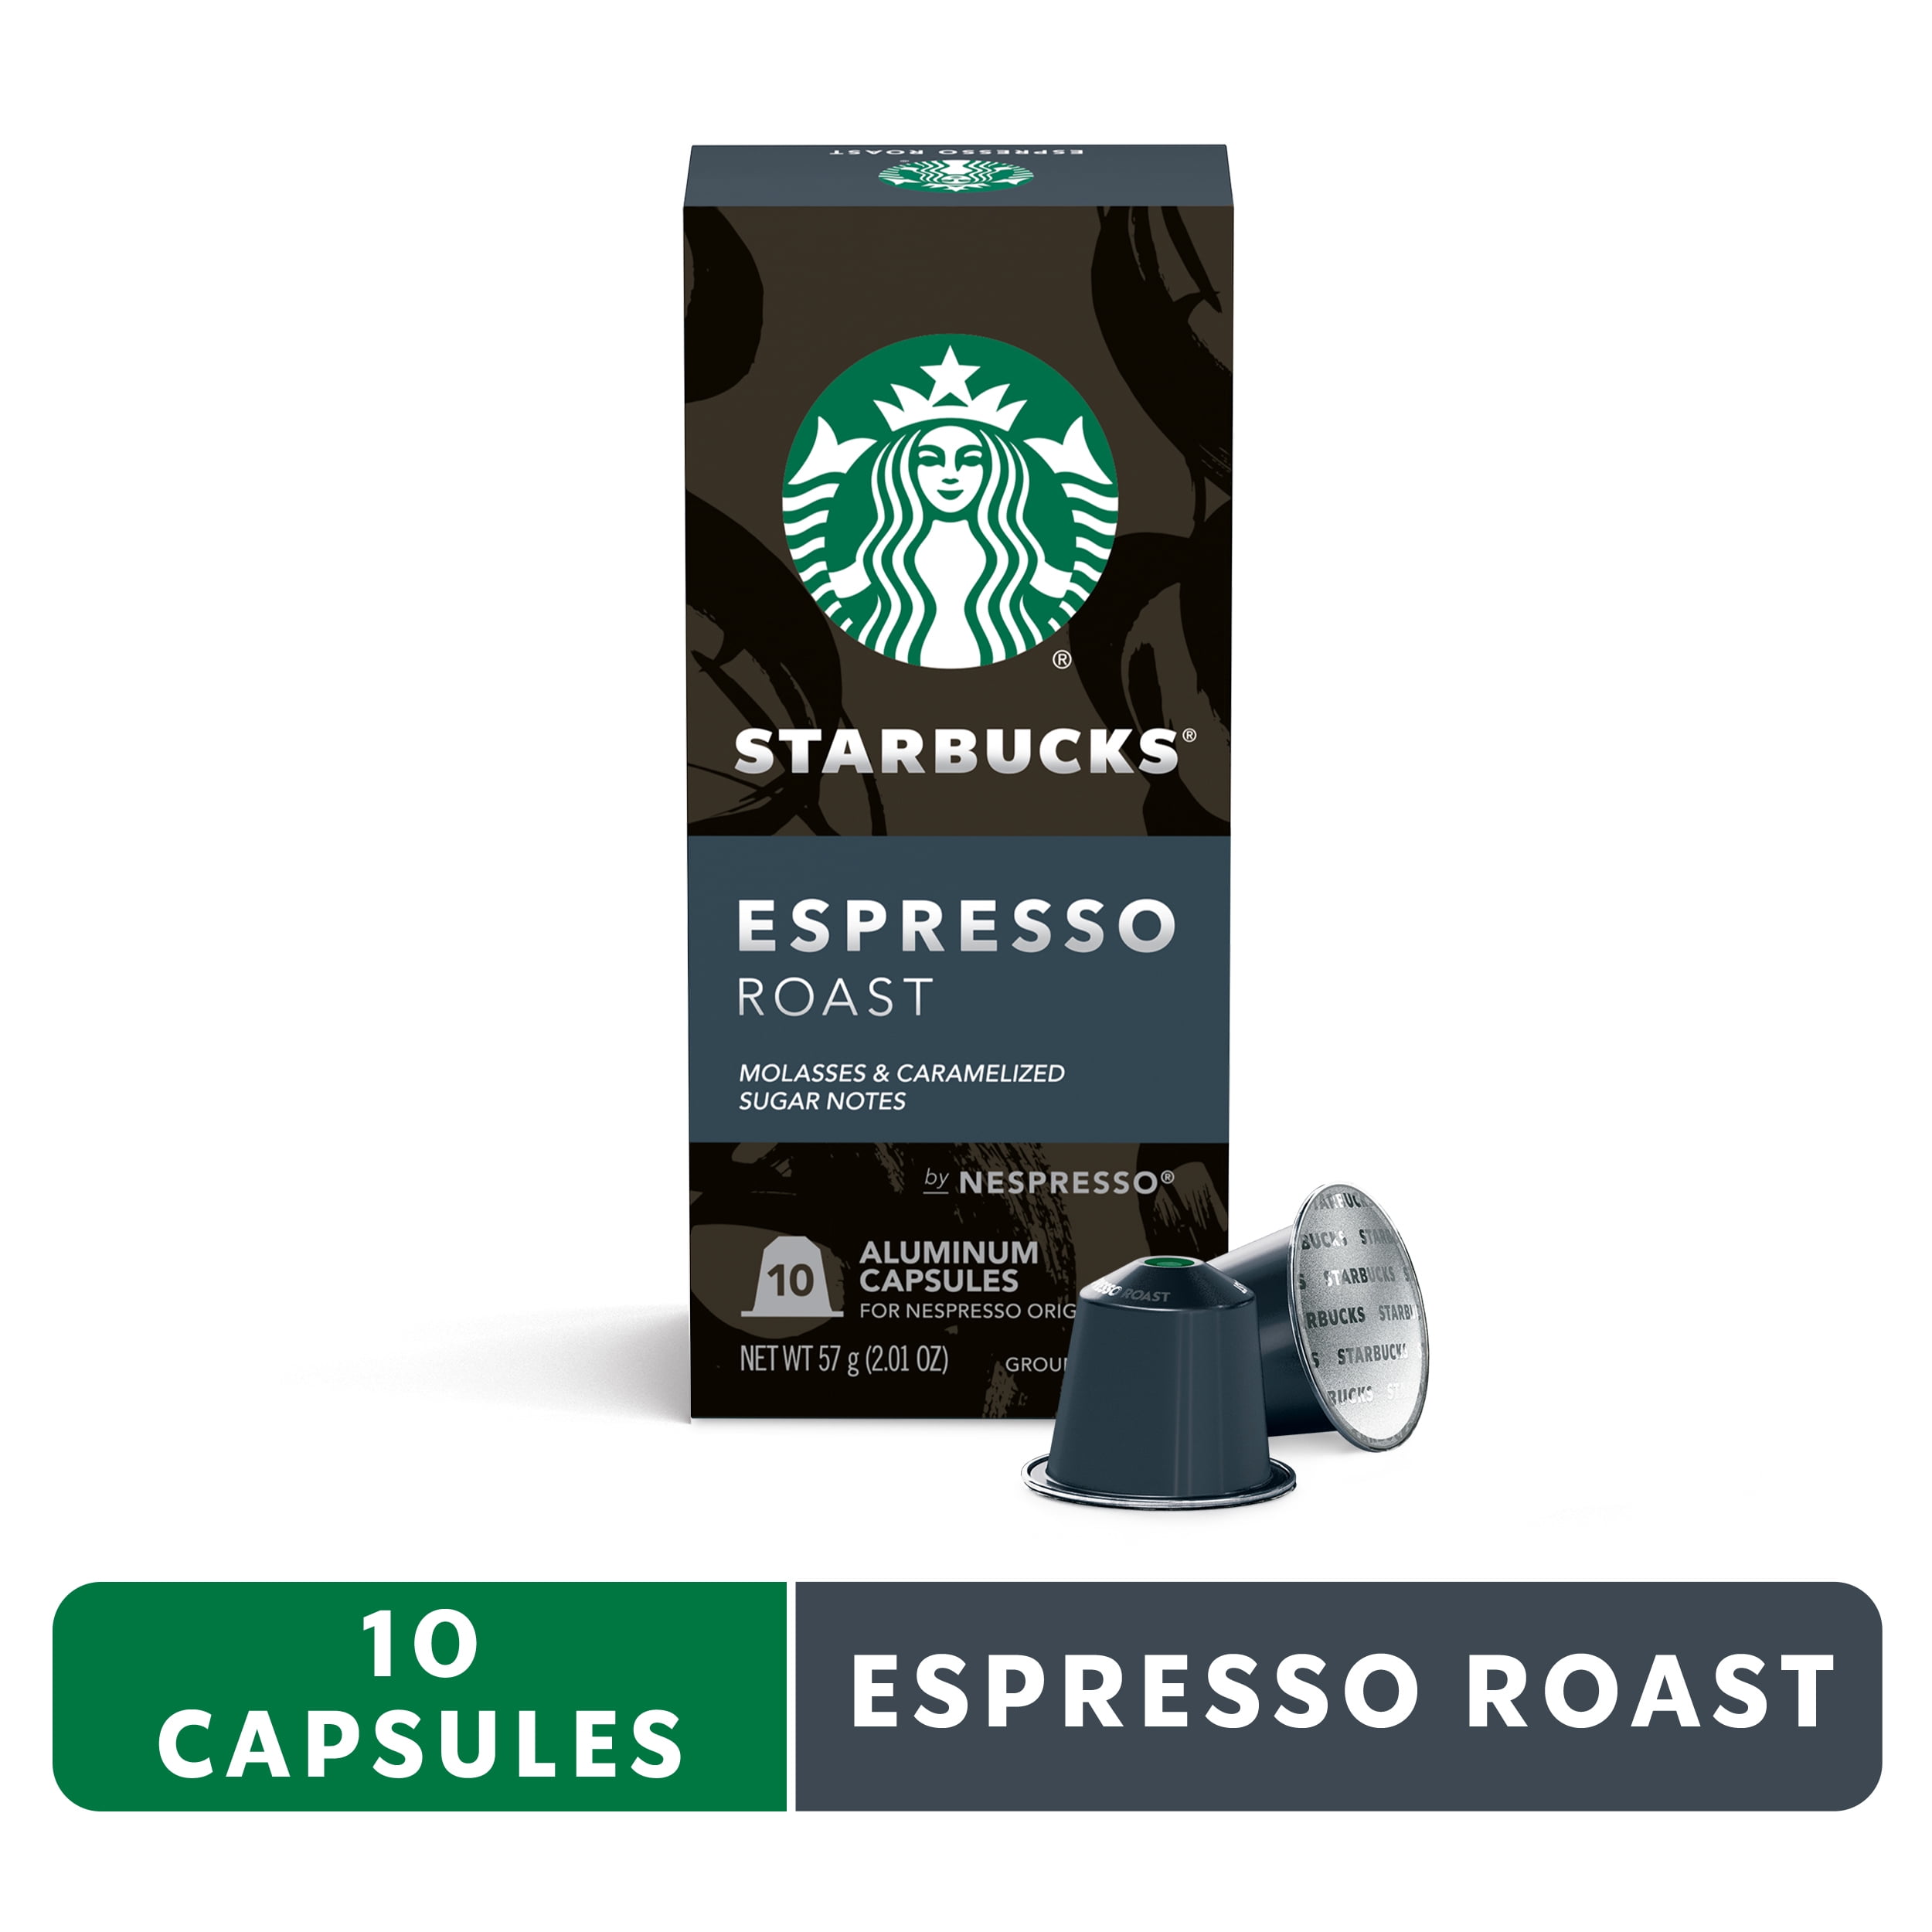 Lavazza Espresso Maestro Ristretto Single Serve Capsules for Nespresso*  Original Machines - 10/Box